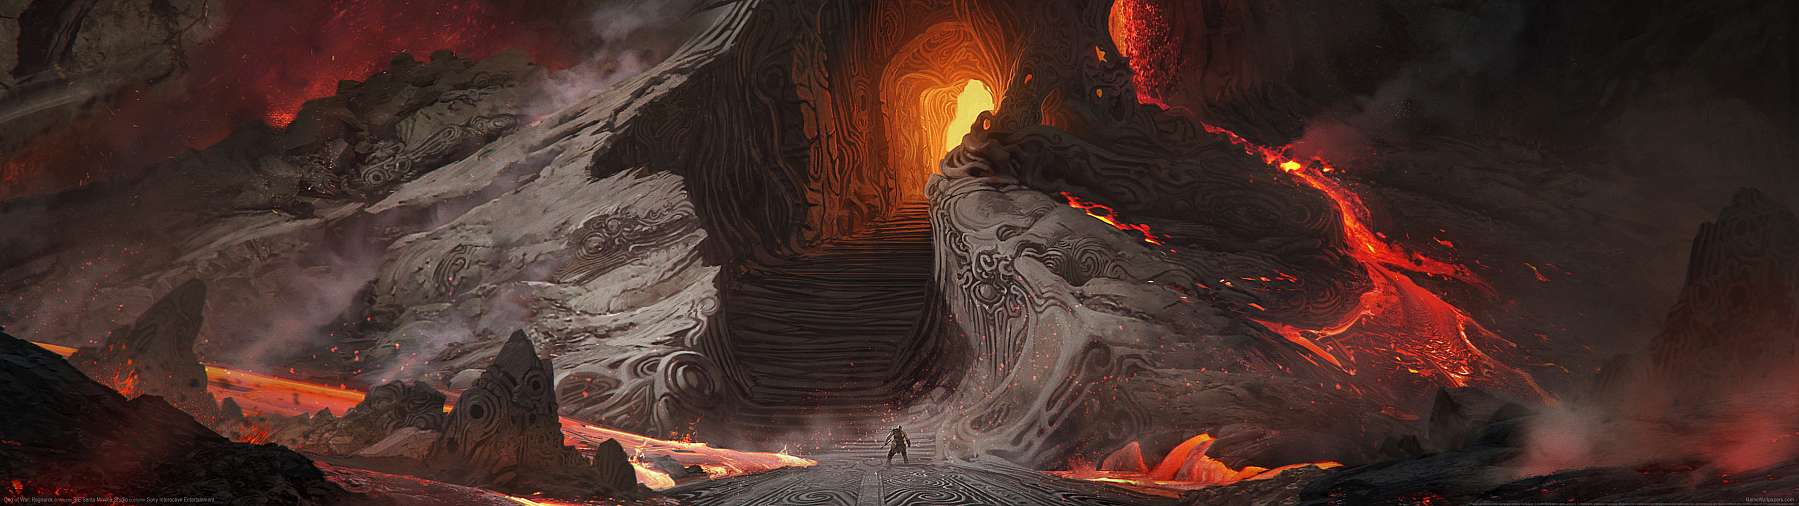 God of War: Ragnarok superwide wallpaper or background 09